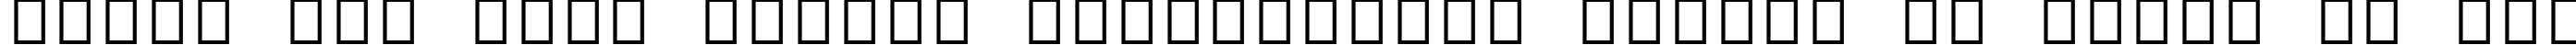 Пример написания шрифтом Arial Alternative Symbol текста на русском